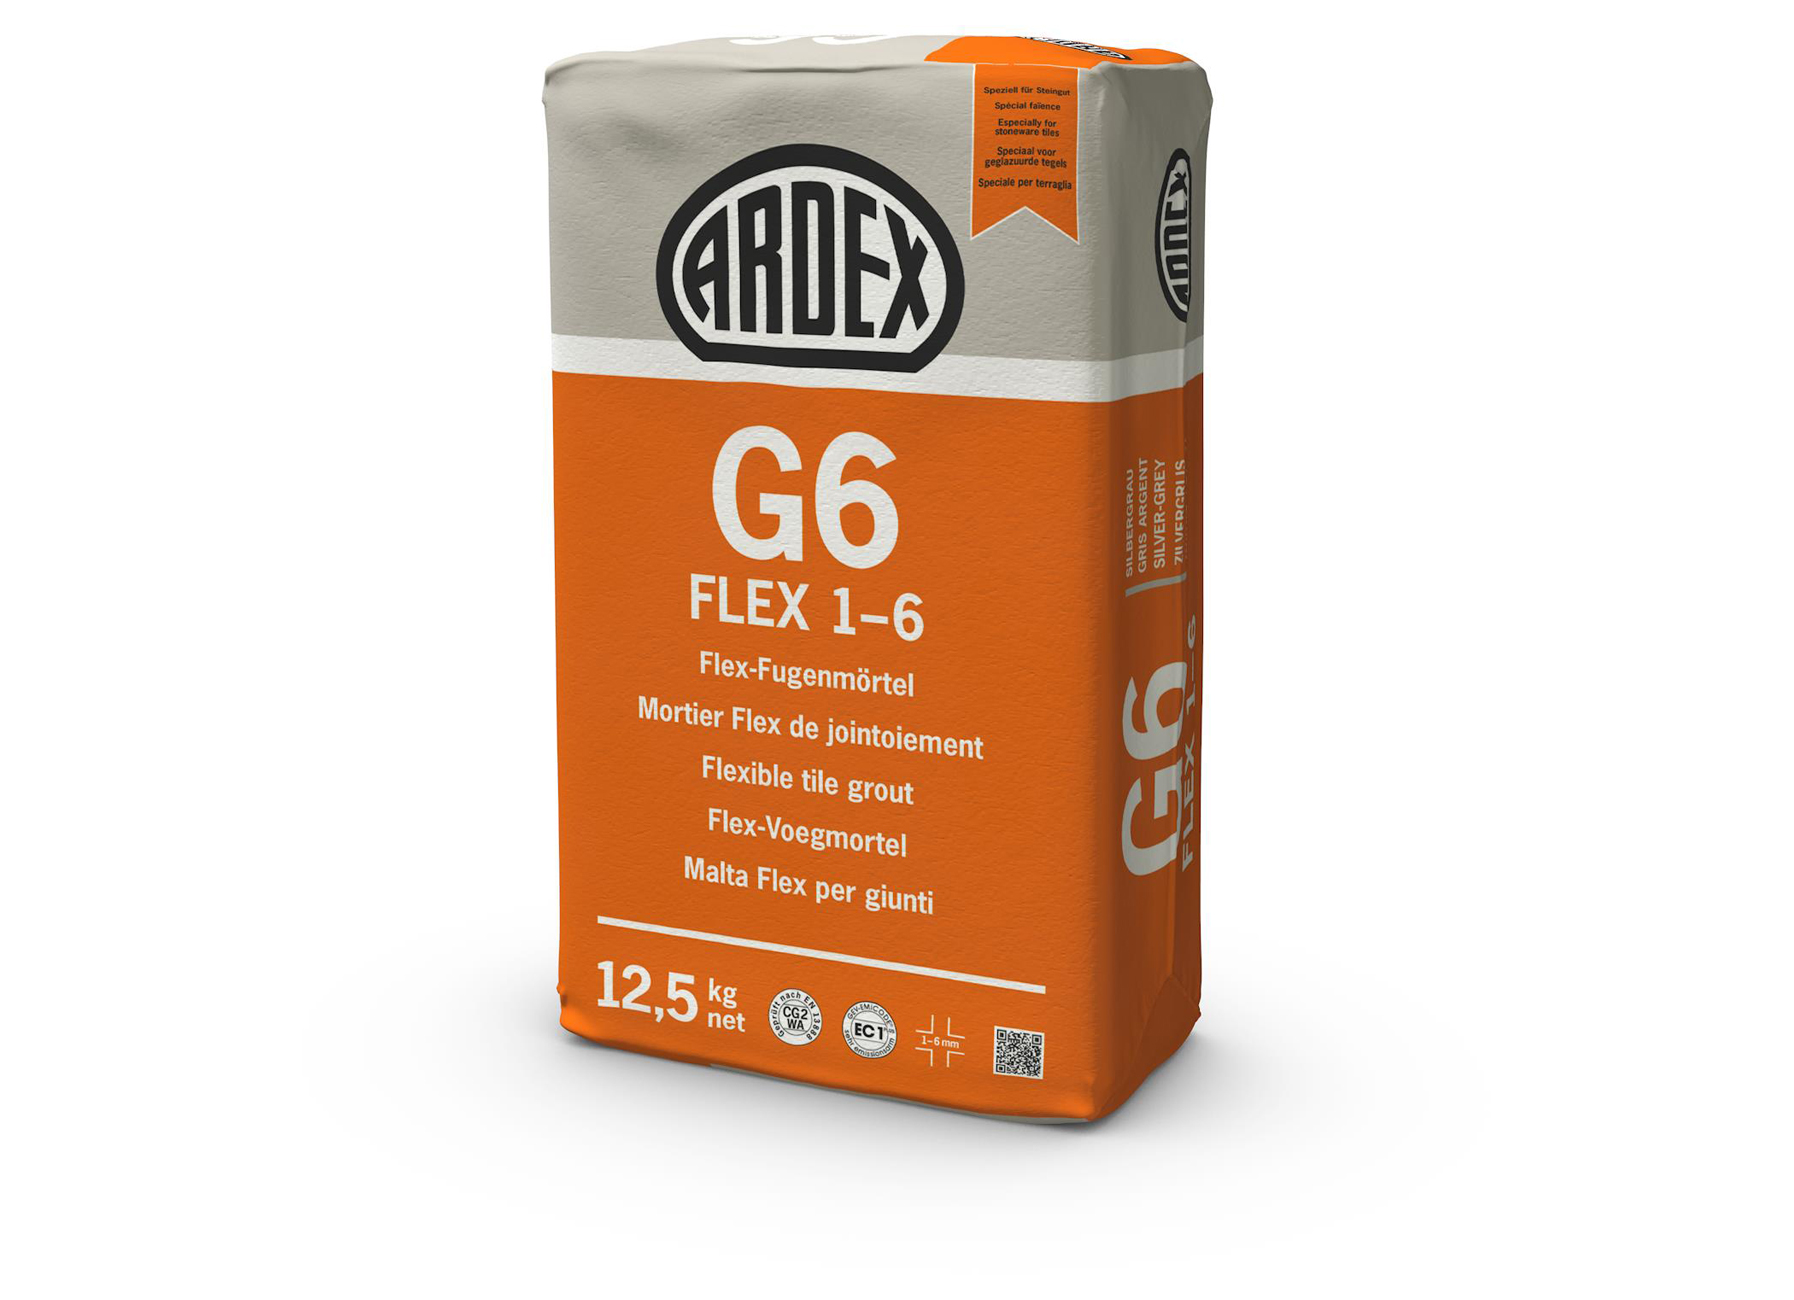 ARDEX G6 FLEX 1-6 ZILVERGRIJS 12.5KG